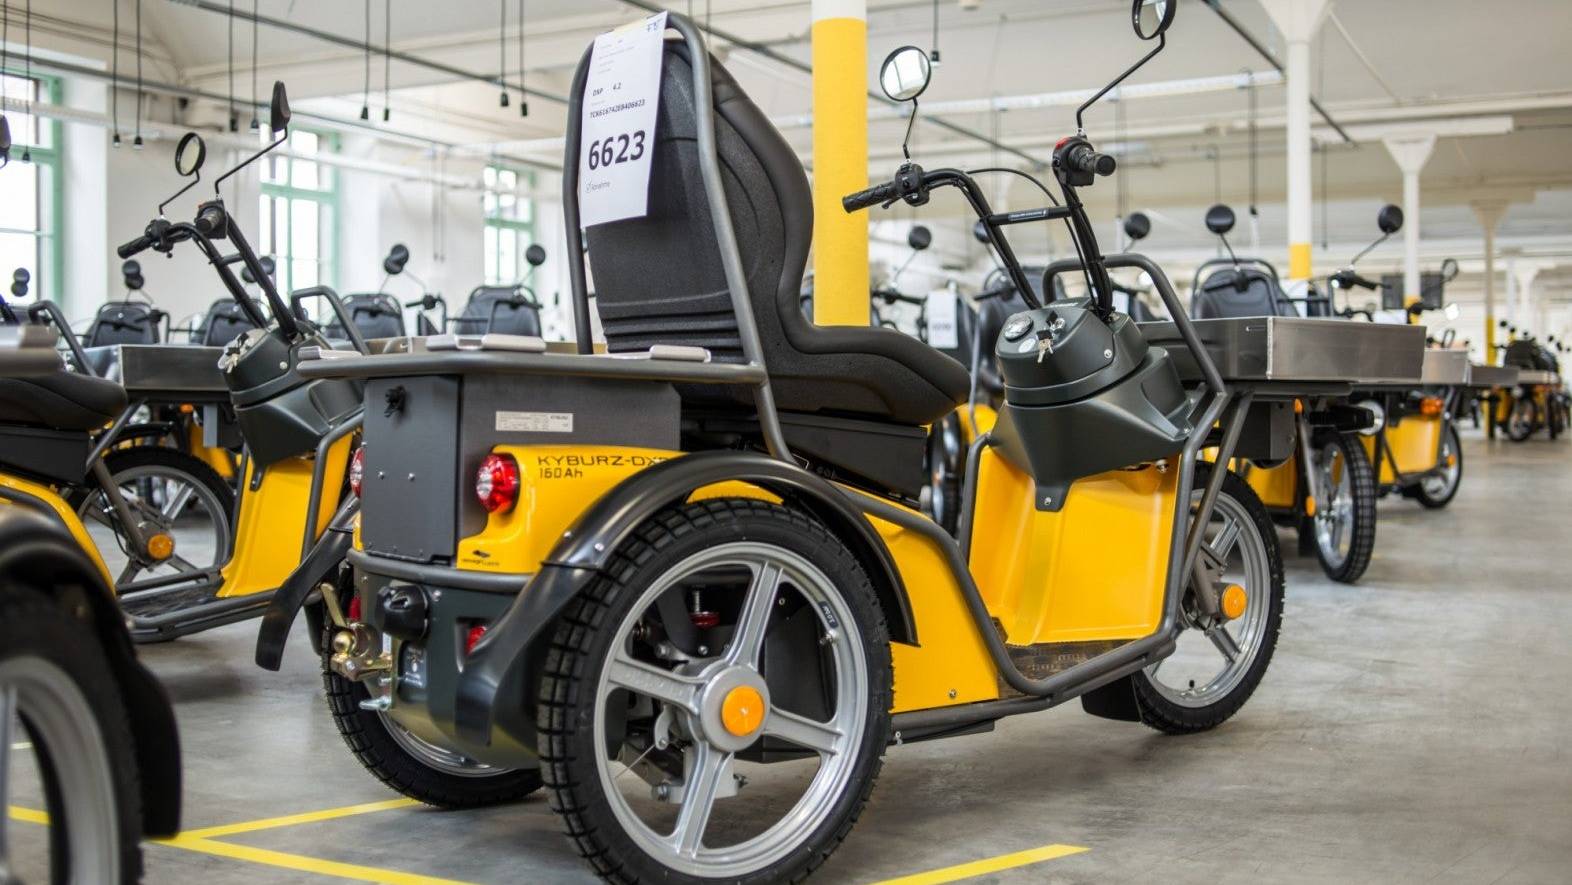 Dank einem neuen Verfahren kann der Elektrofahrzeughersteller Kyburz die Batterien seiner Dreirad-Roller in einer eigenen Anlage recyclen.